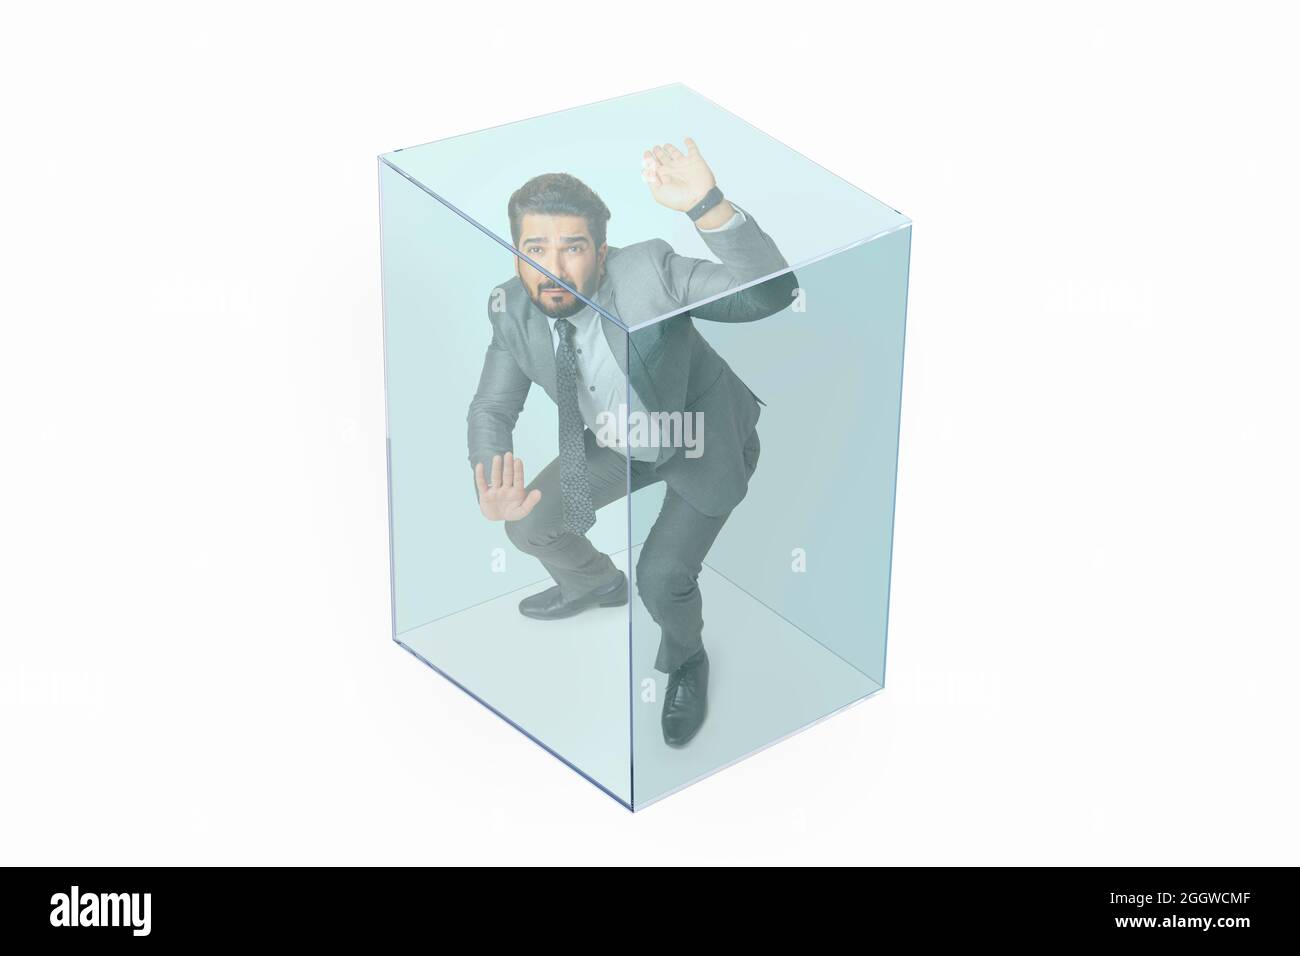 Porträt eines Mannes in formellem Business-Anzug in einem transparenten Würfel gefangen. Stockfoto